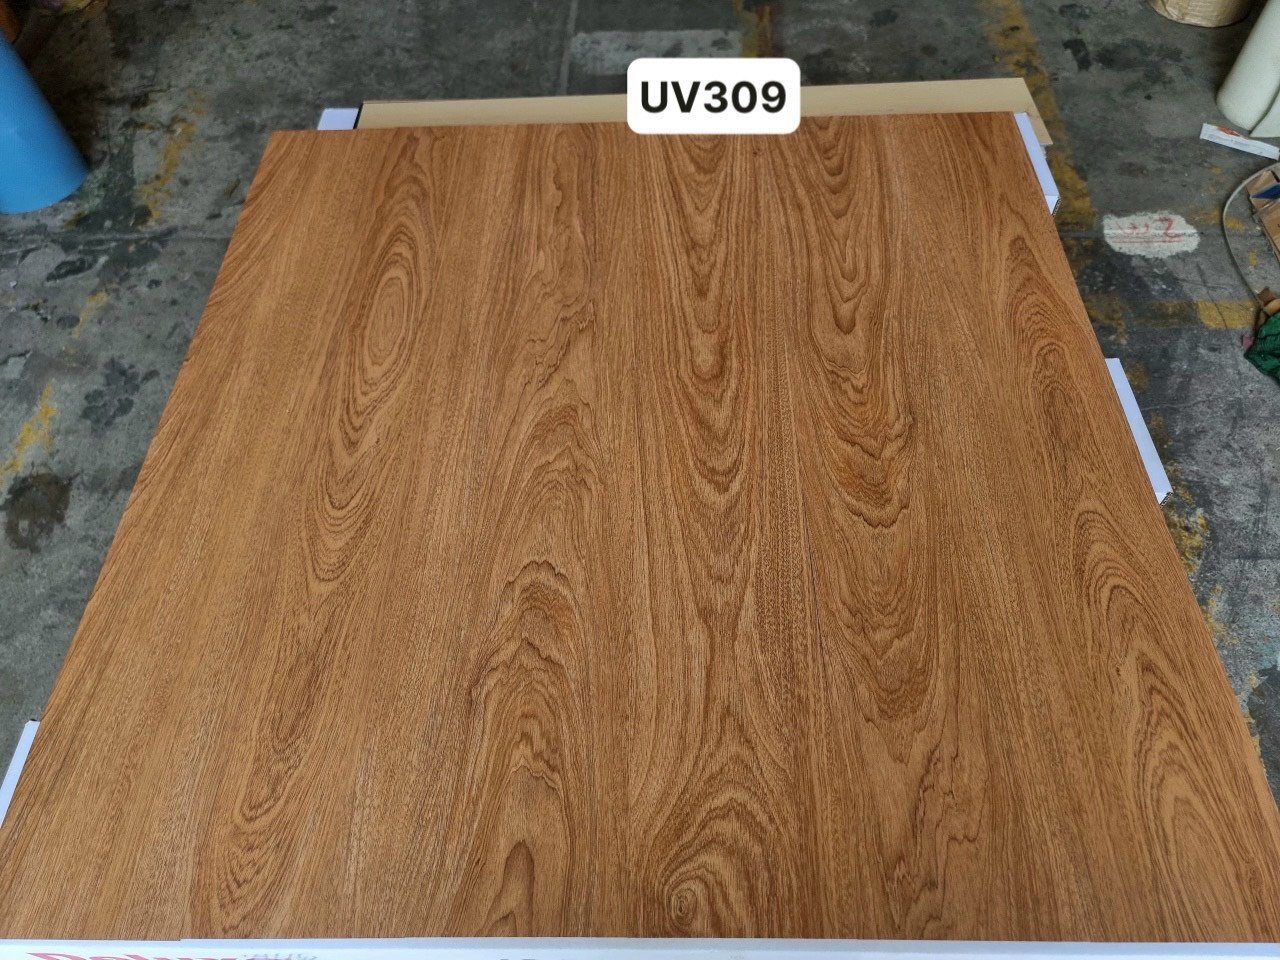 UV 309